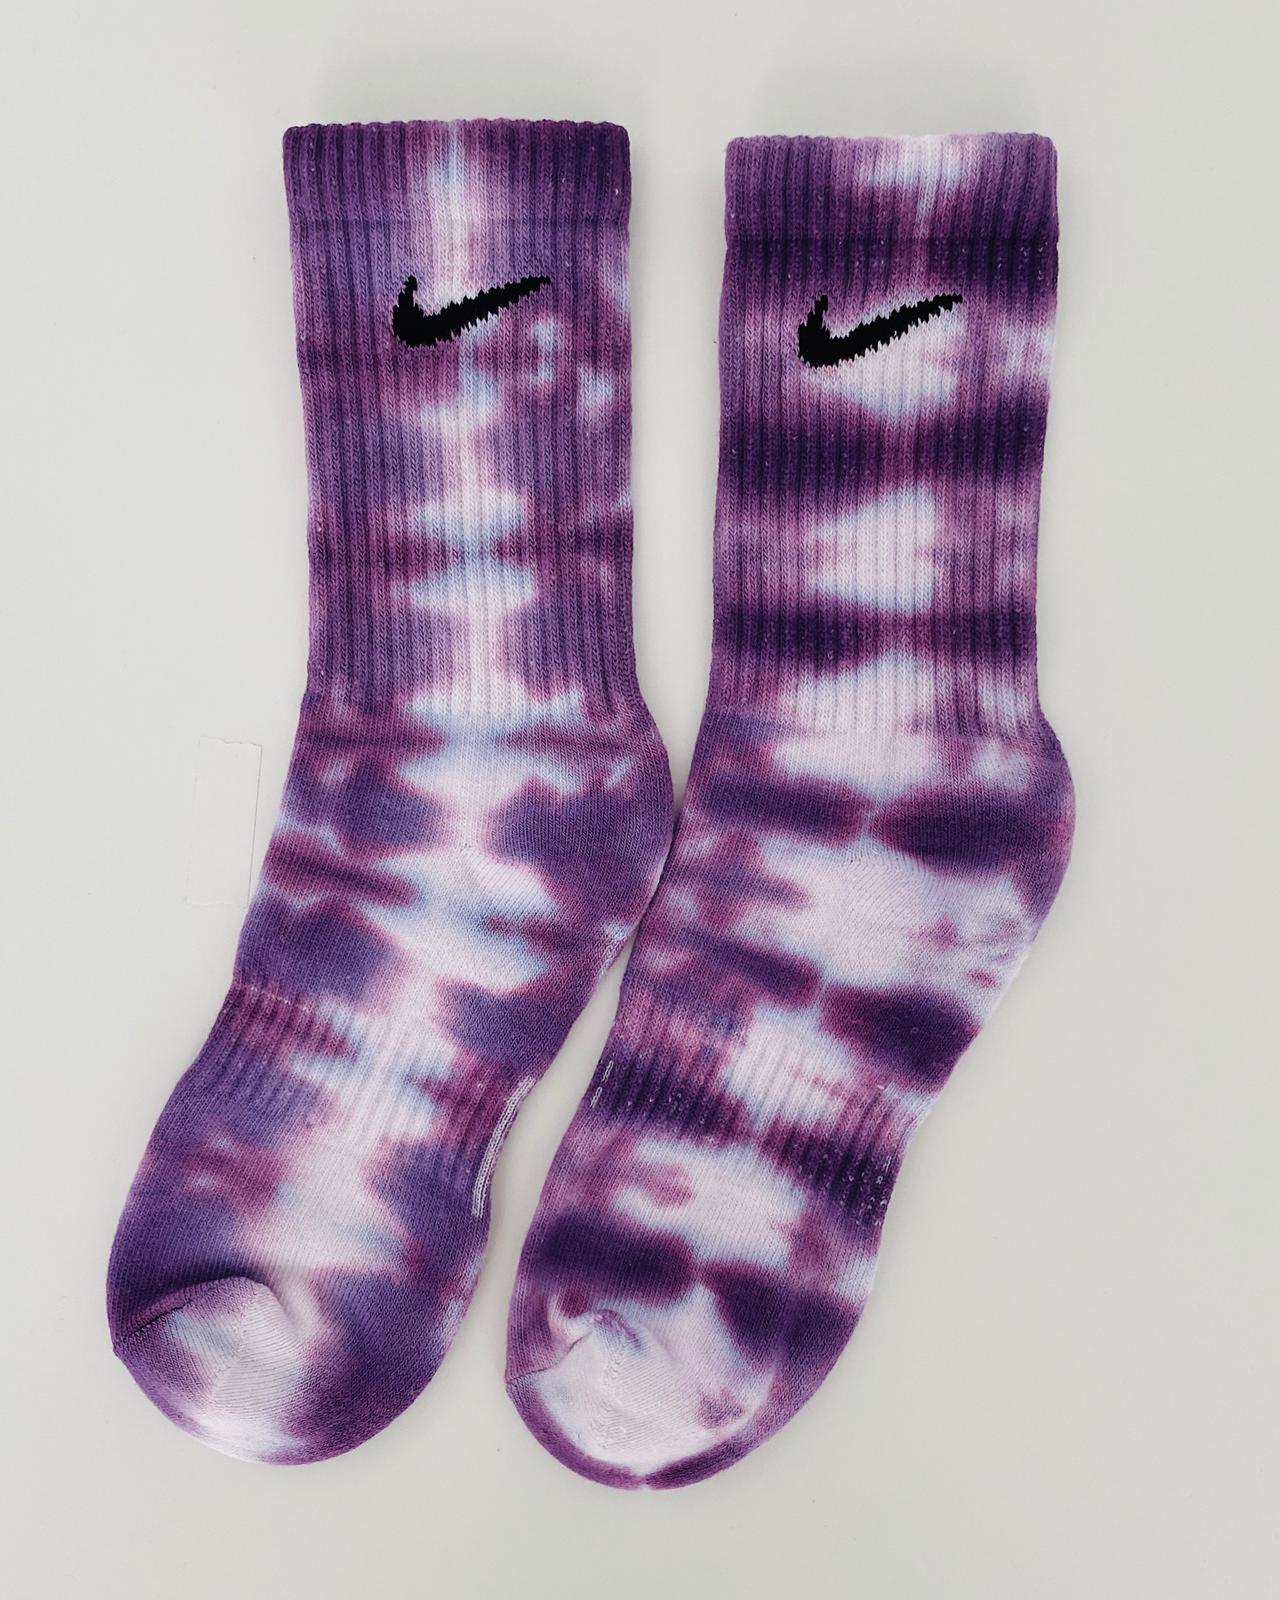 Calcetines Nike tie dye stripes Grape. Calcetines únicos y diferentes 100% originales teñidos a mano. Shop NOW!